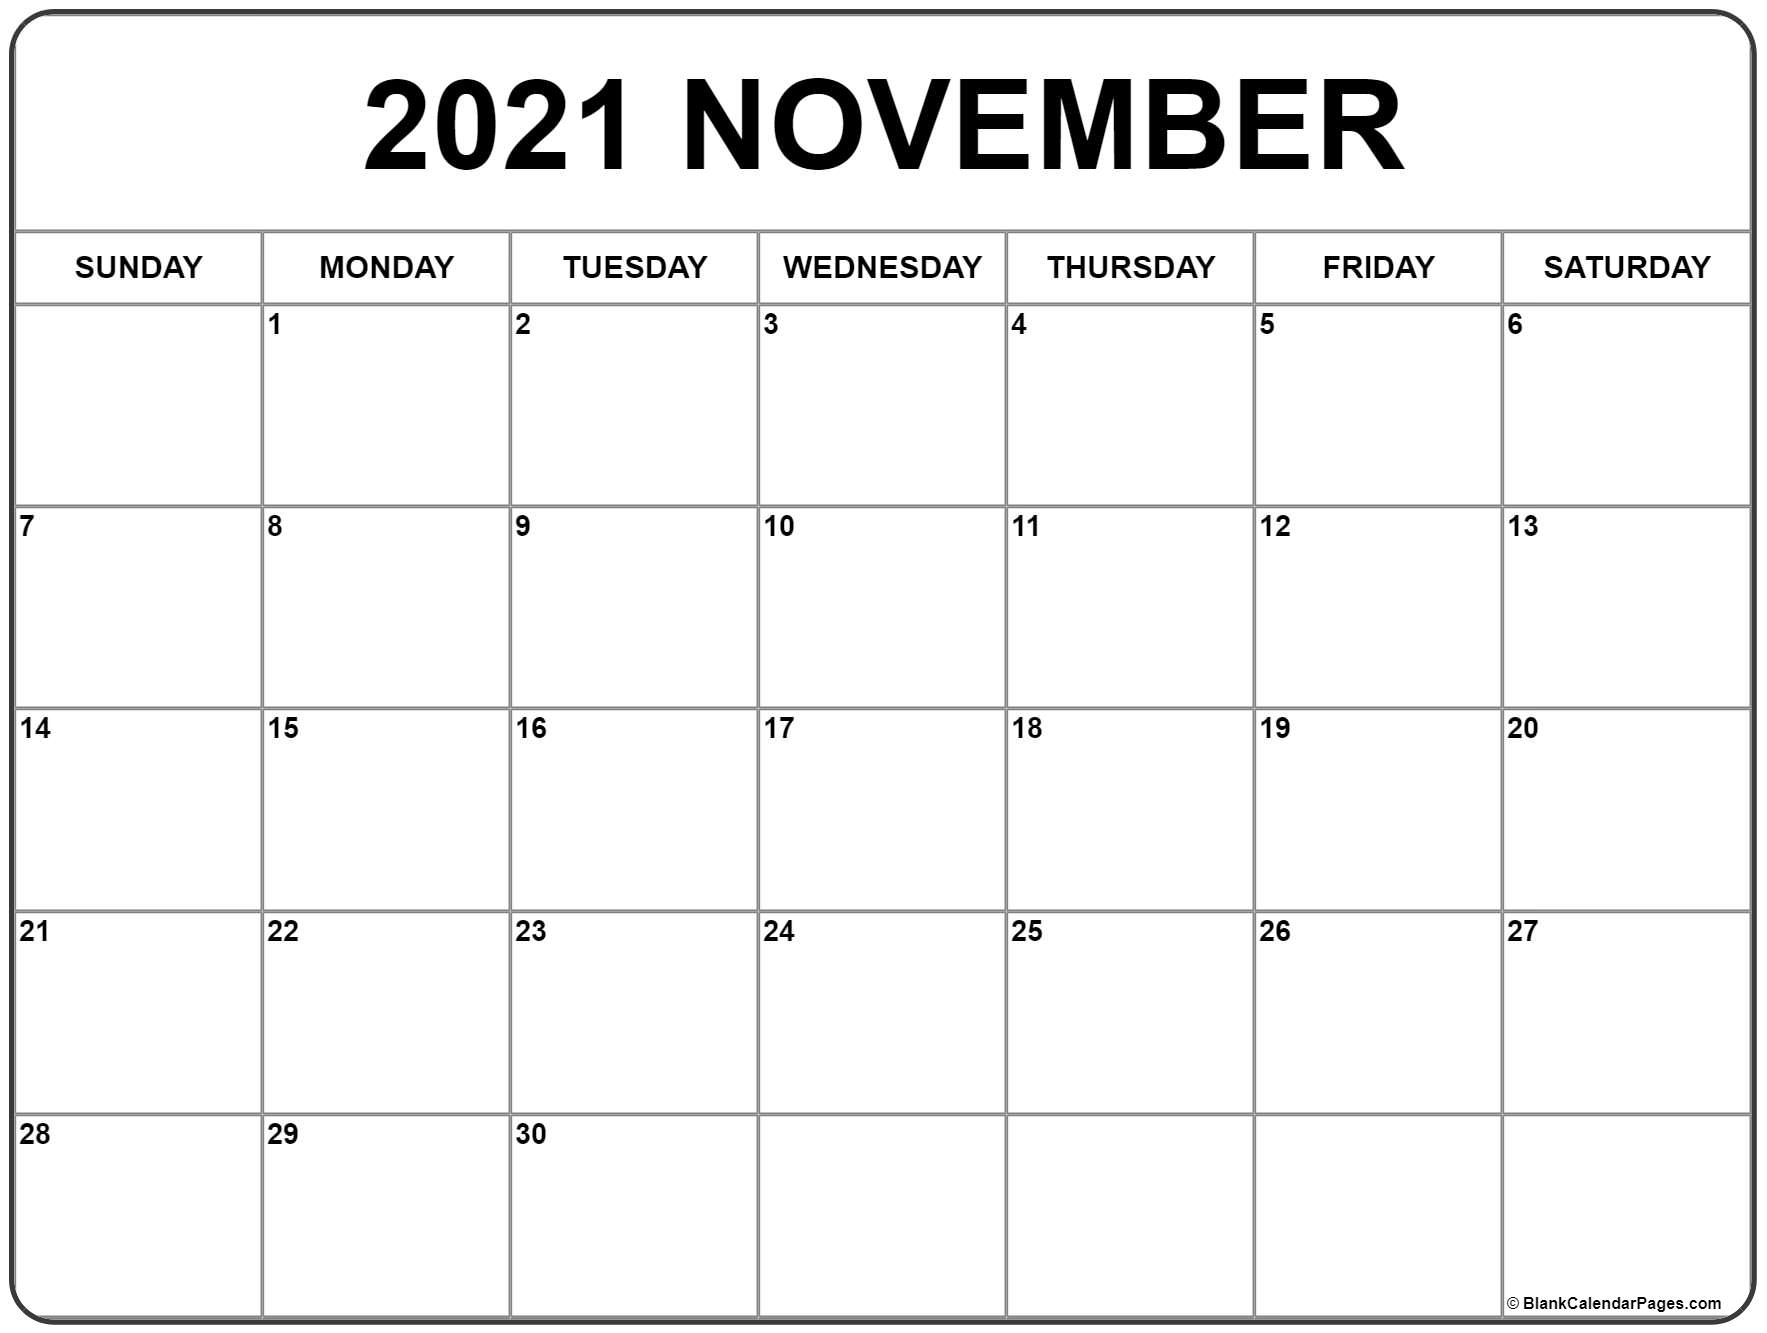 Take August September October 2021 Calendar Printable